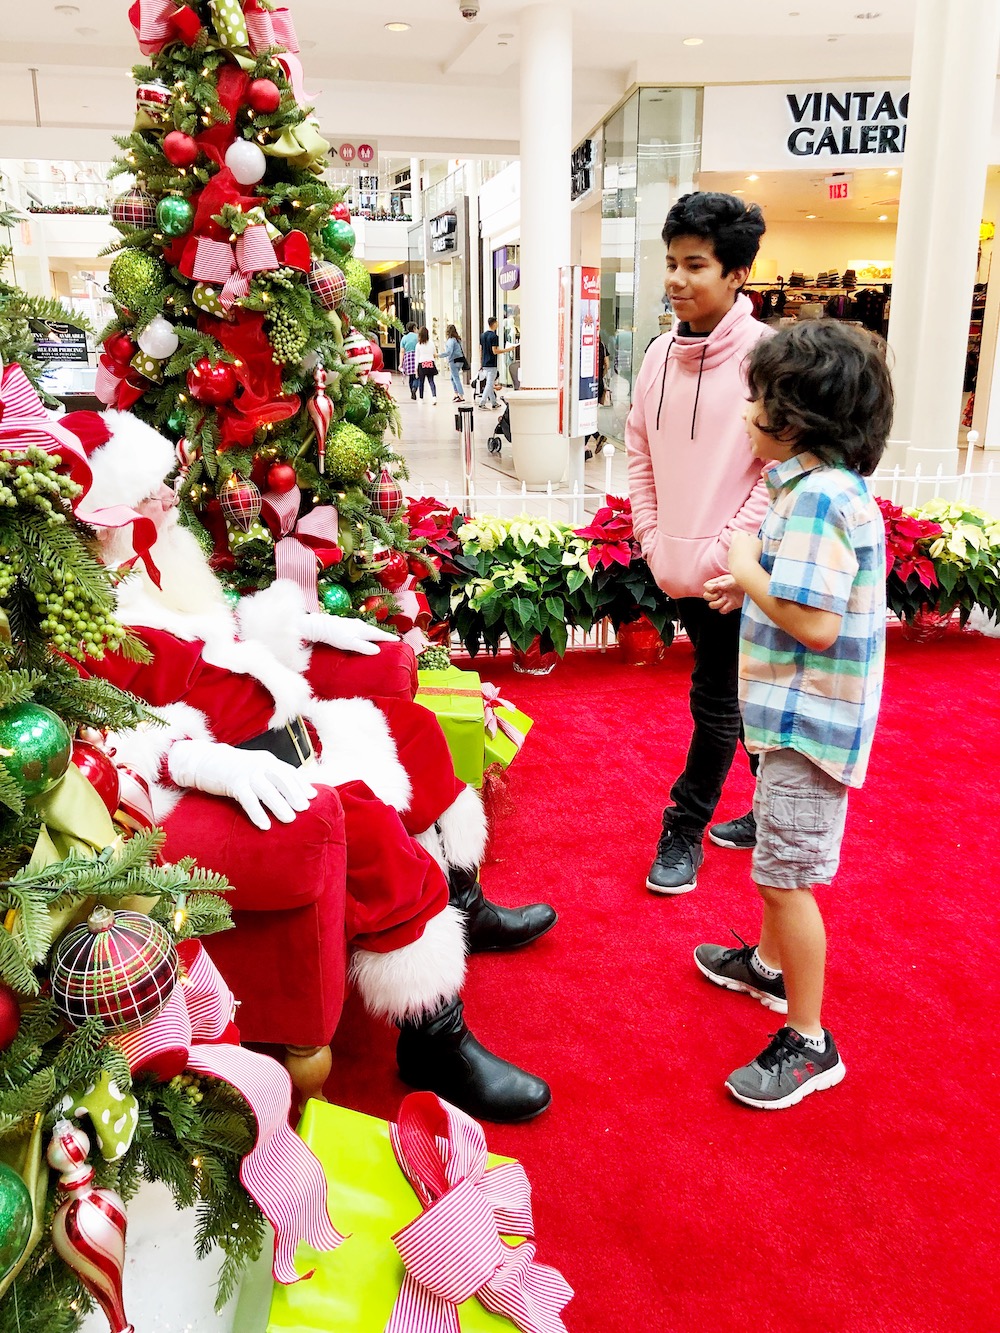 Holiday shopping and visiting Santa at MainPlace Mall in Santa Ana | LivingMiVidaLoca.com | #LivingMiVidaLoca #SantaAna #ShopMainPlace #ShopMainPlaceMall #MainPlace #KidBlogger